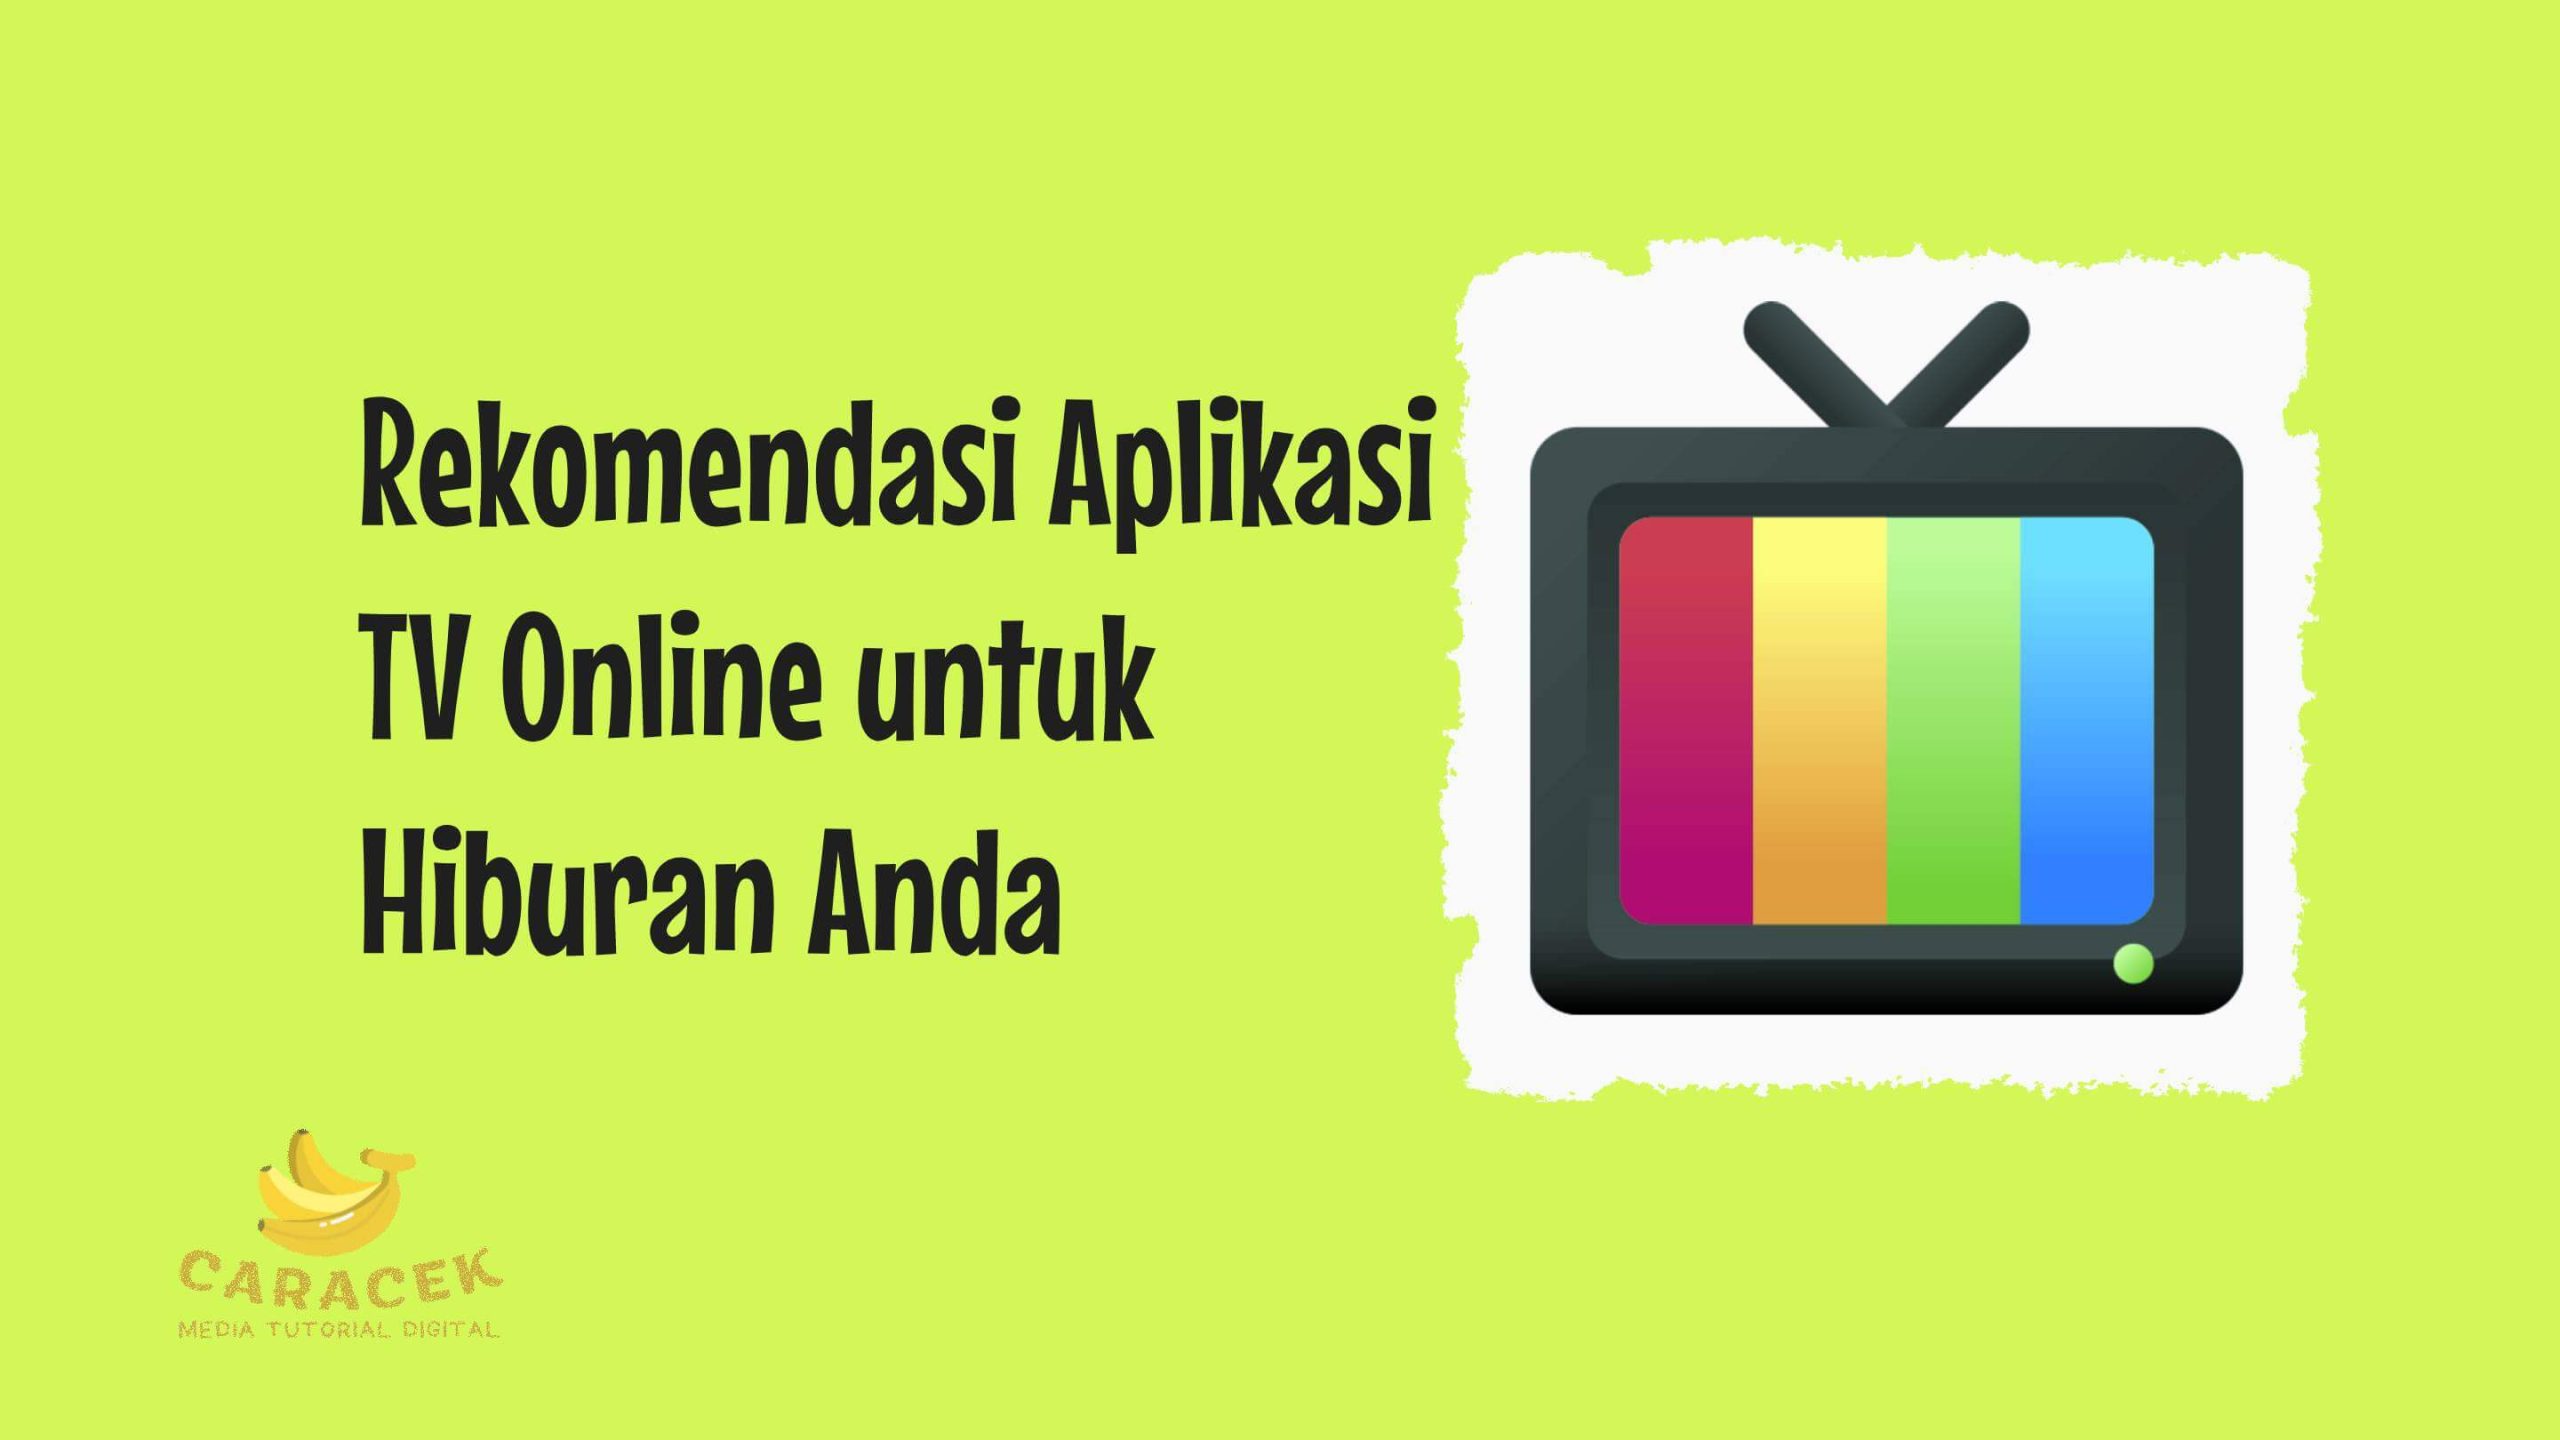 Aplikasi TV Online